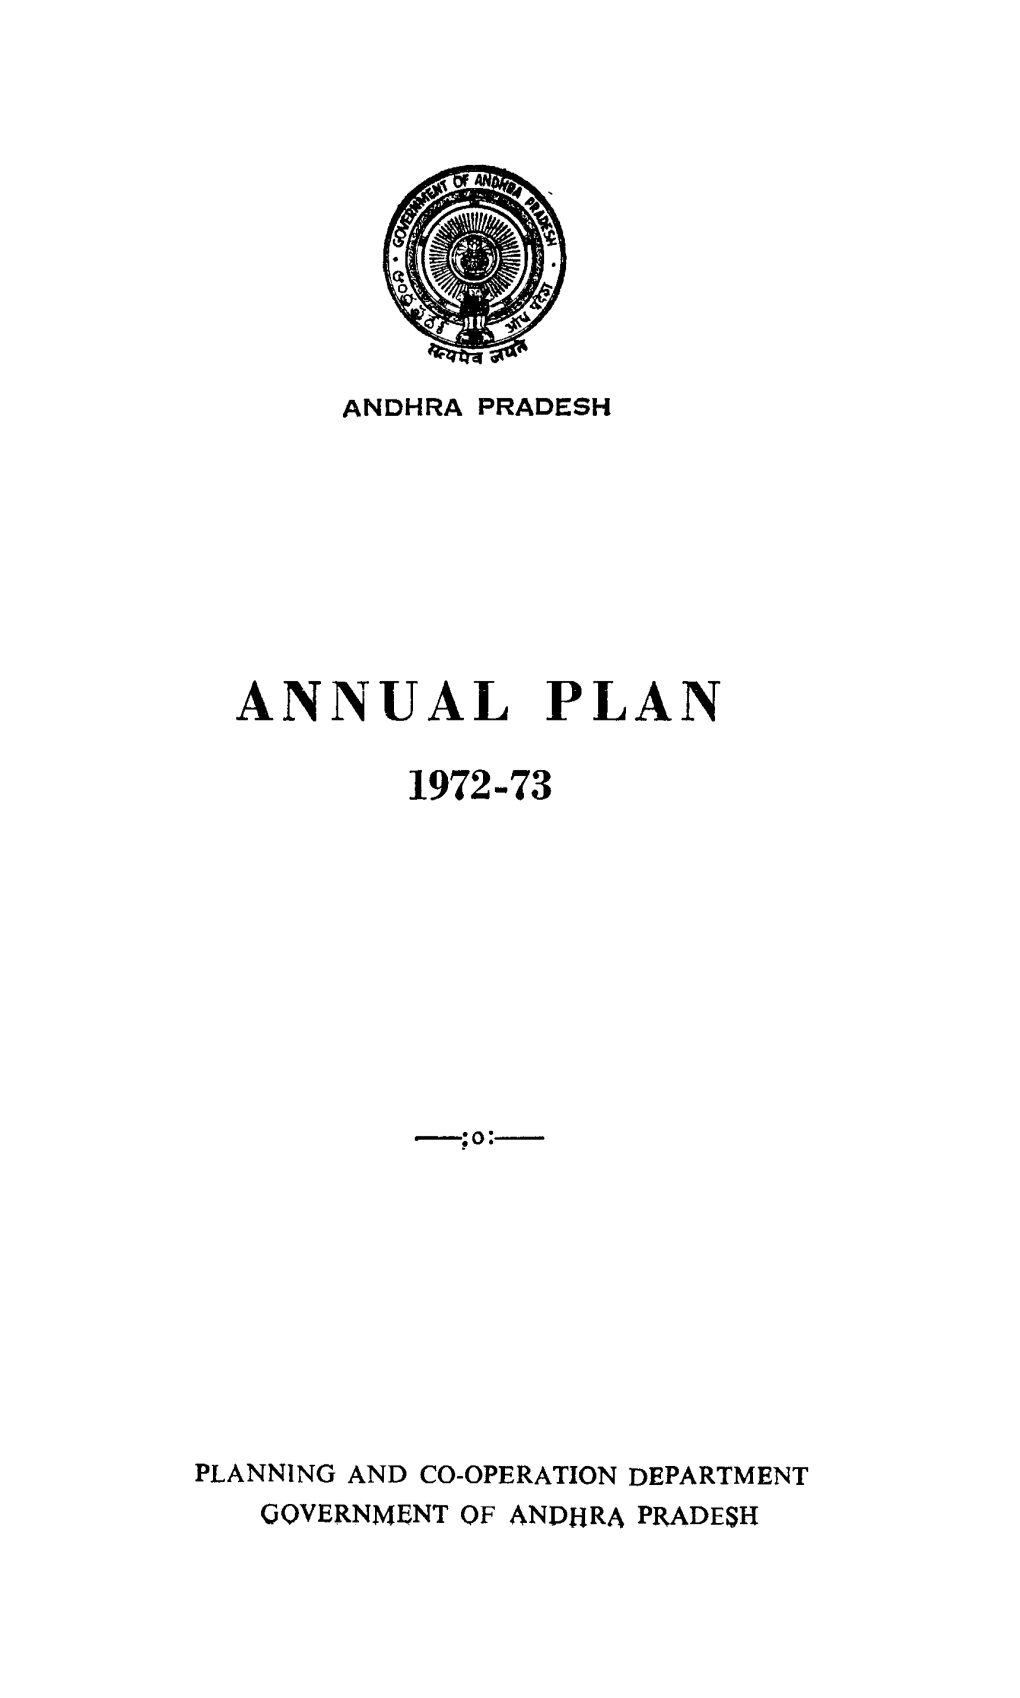 Annual Plan 1972-73